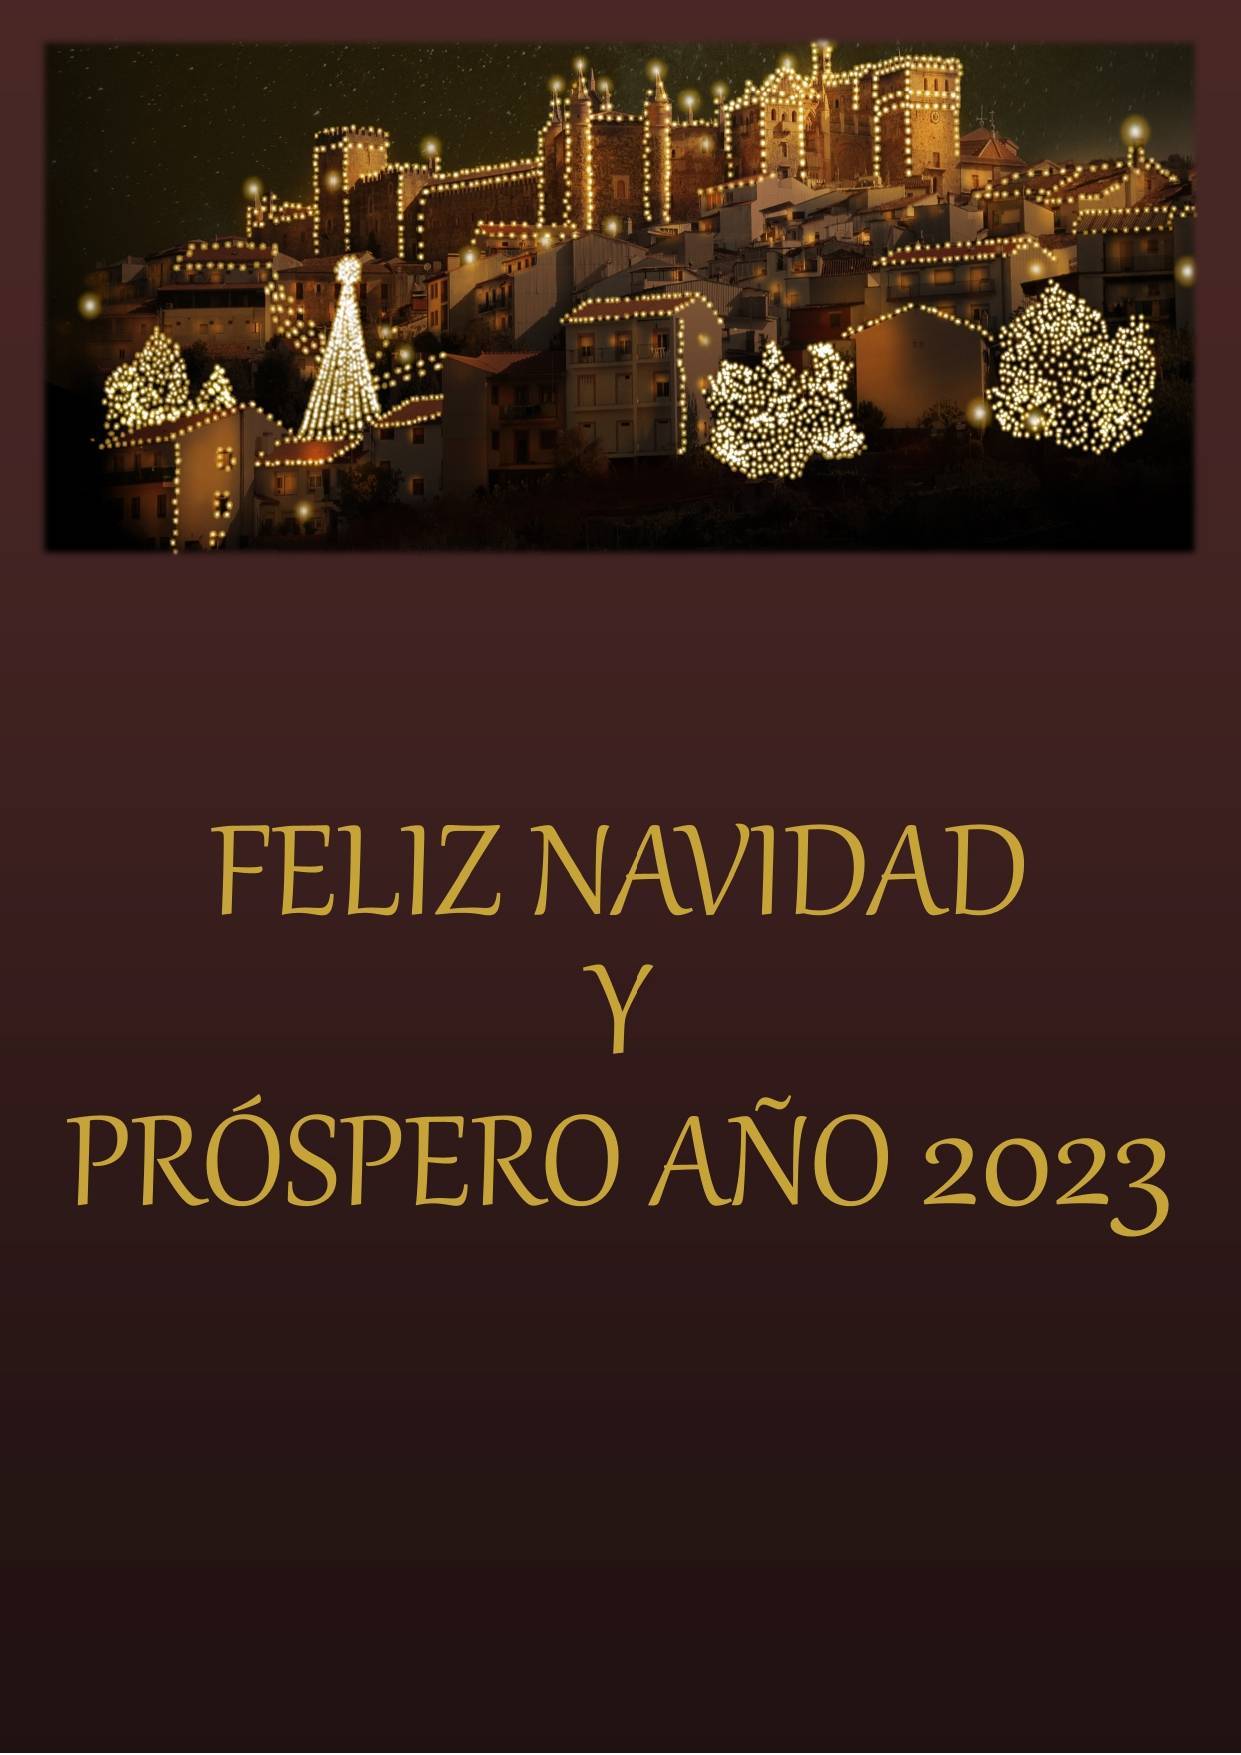 Encendido iluminación navideña y programa de Navidad (2022) - Guadalupe (Cáceres) 5